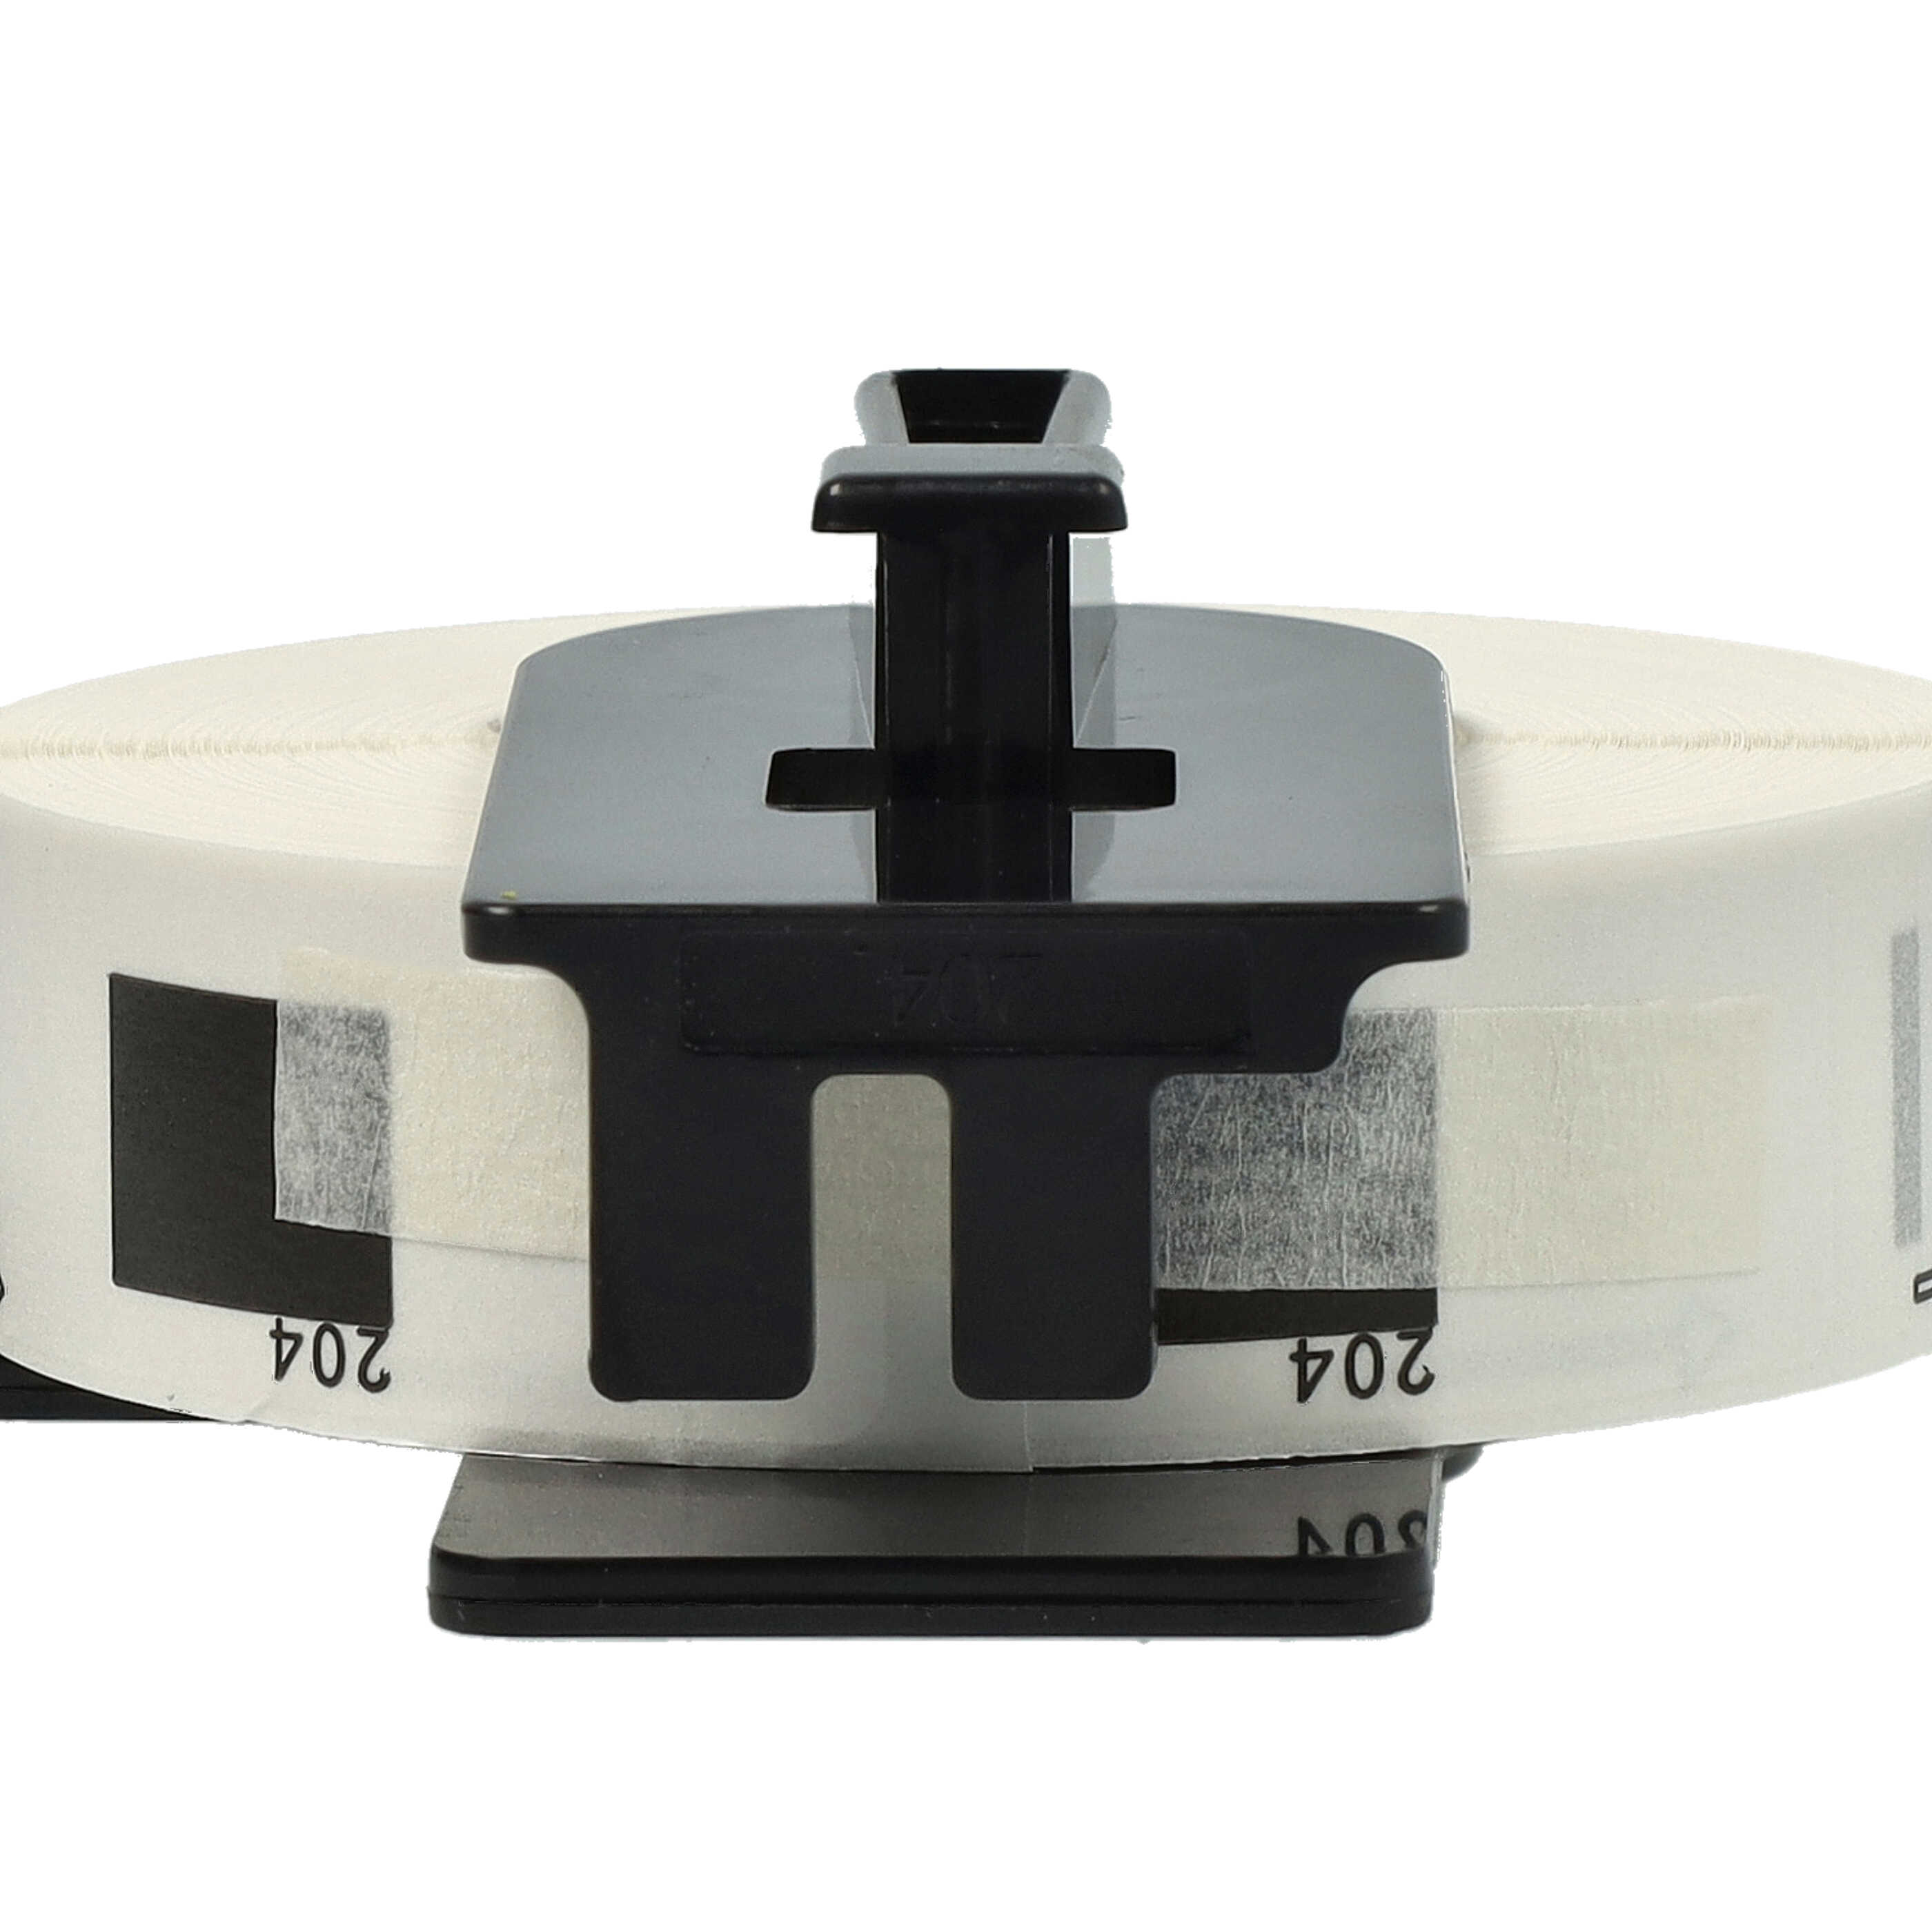 Rotolo etichette sostituisce Brother DK-11204 per etichettatrice - 17mm x 54mm + supporto